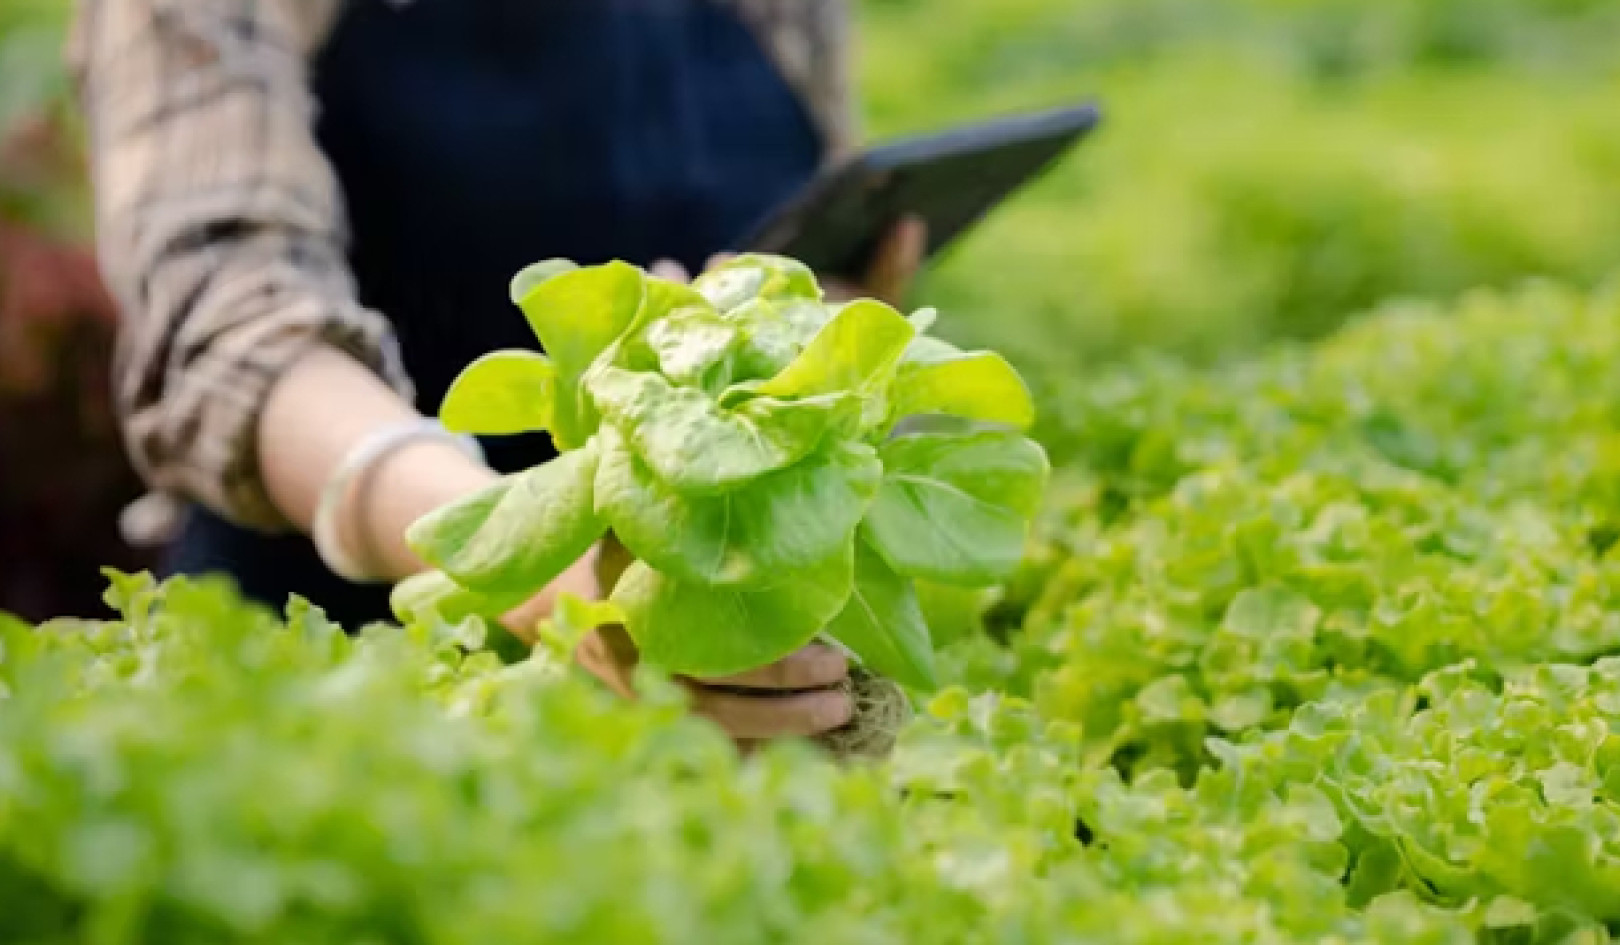 ค้นพบผักใบเขียวที่มีคุณค่าทางโภชนาการสูง XNUMX ชนิด